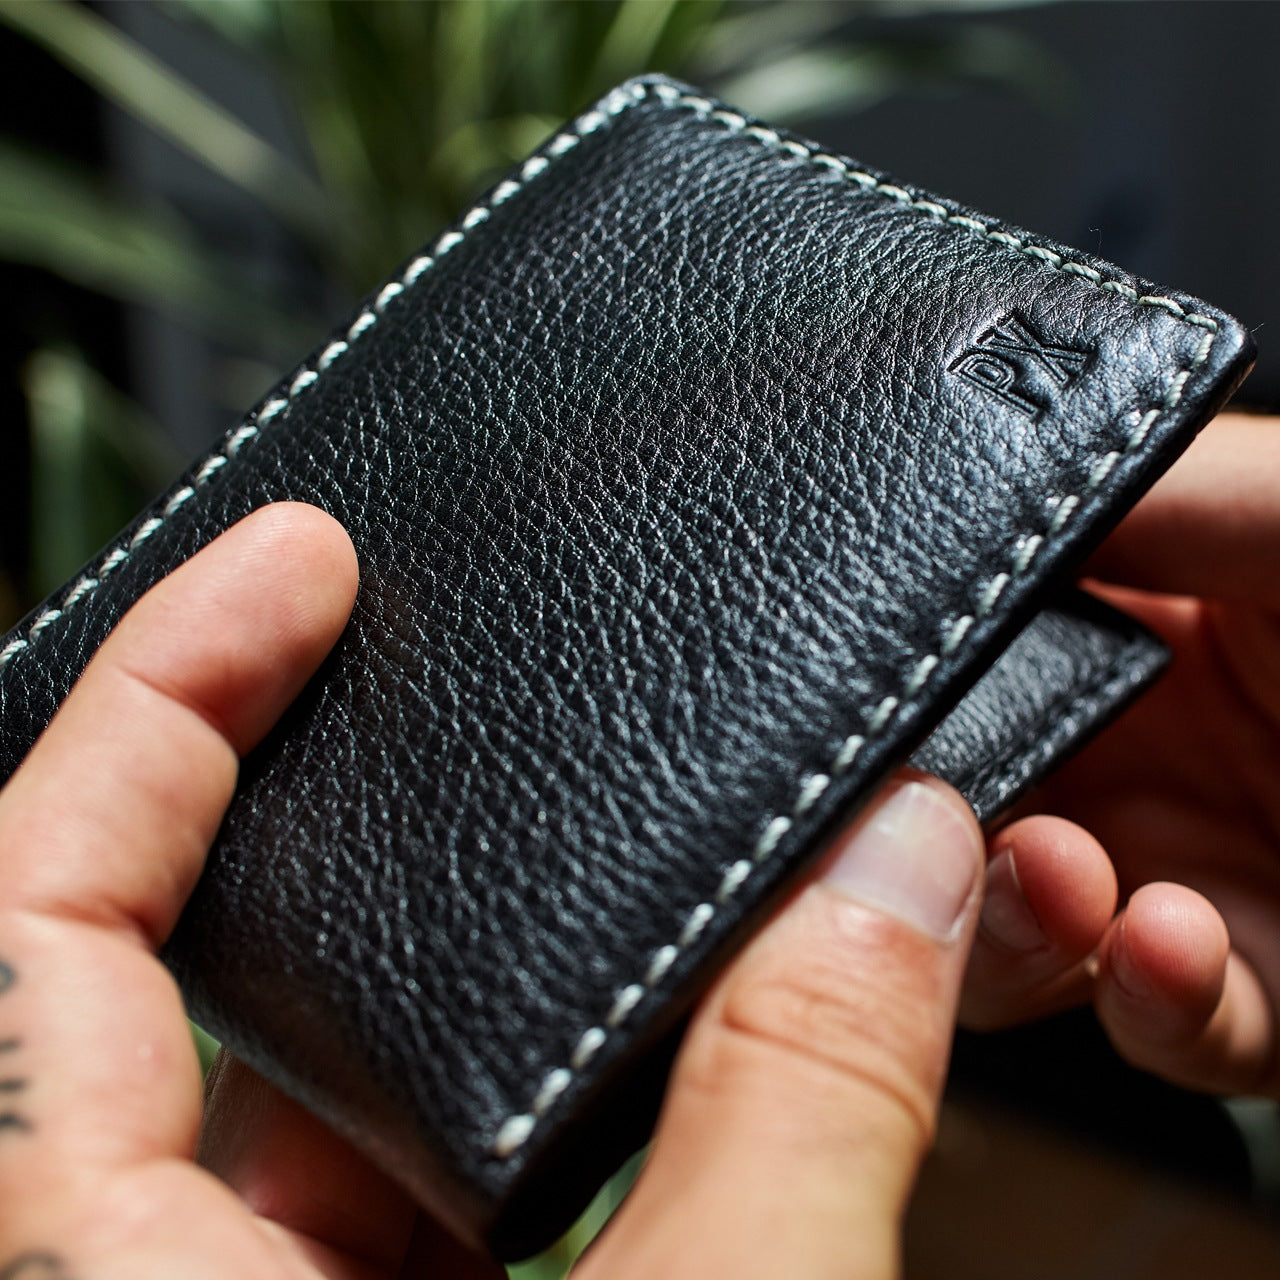 Wallet - Hayes Leather Bi-Fold Wallet